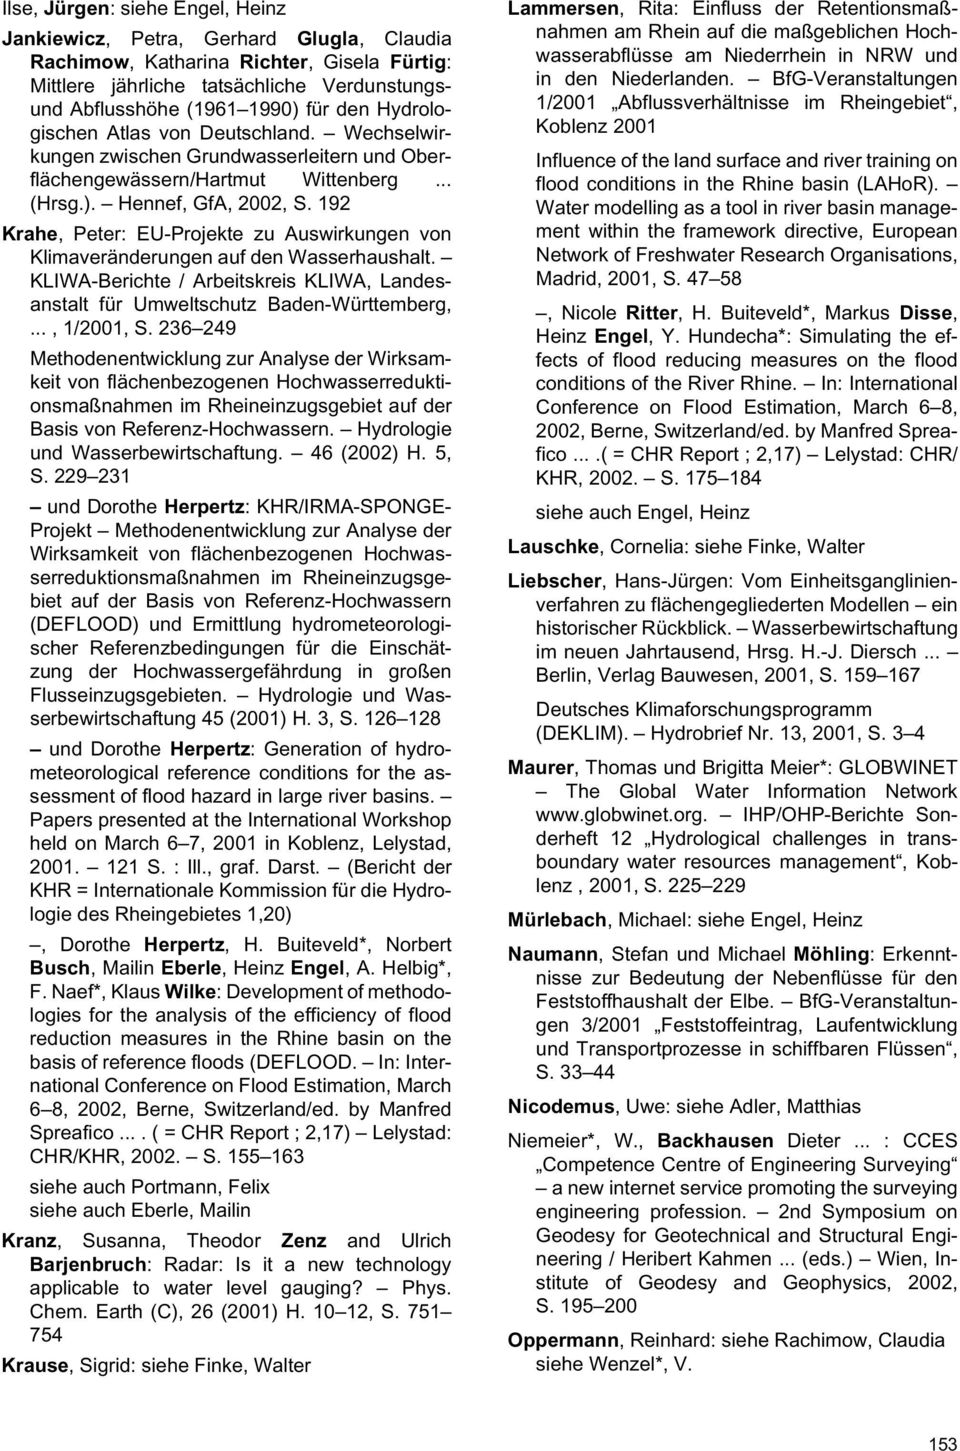 192 Krahe, Peter: EU-Projekte zu Auswirkungen von Klimaveränderungen auf den Wasserhaushalt. KLIWA-Berichte / Arbeitskreis KLIWA, Landesanstalt für Umweltschutz Baden-Württemberg,..., 1/2001, S.